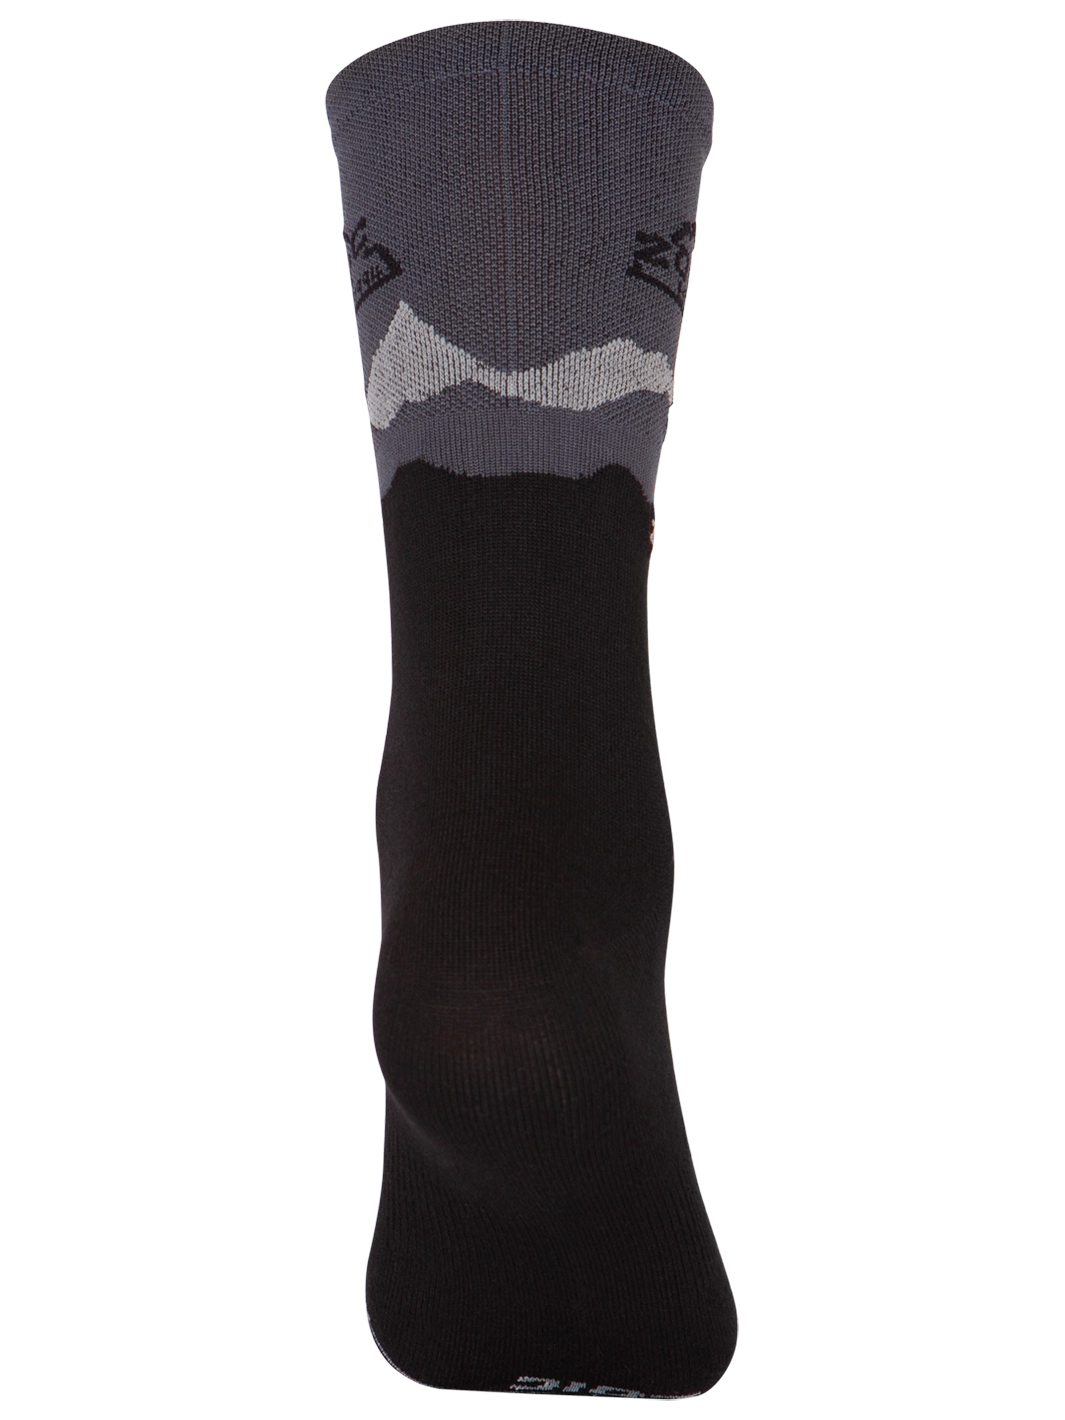 Black/Grey Adventure Socks#color_black-grey